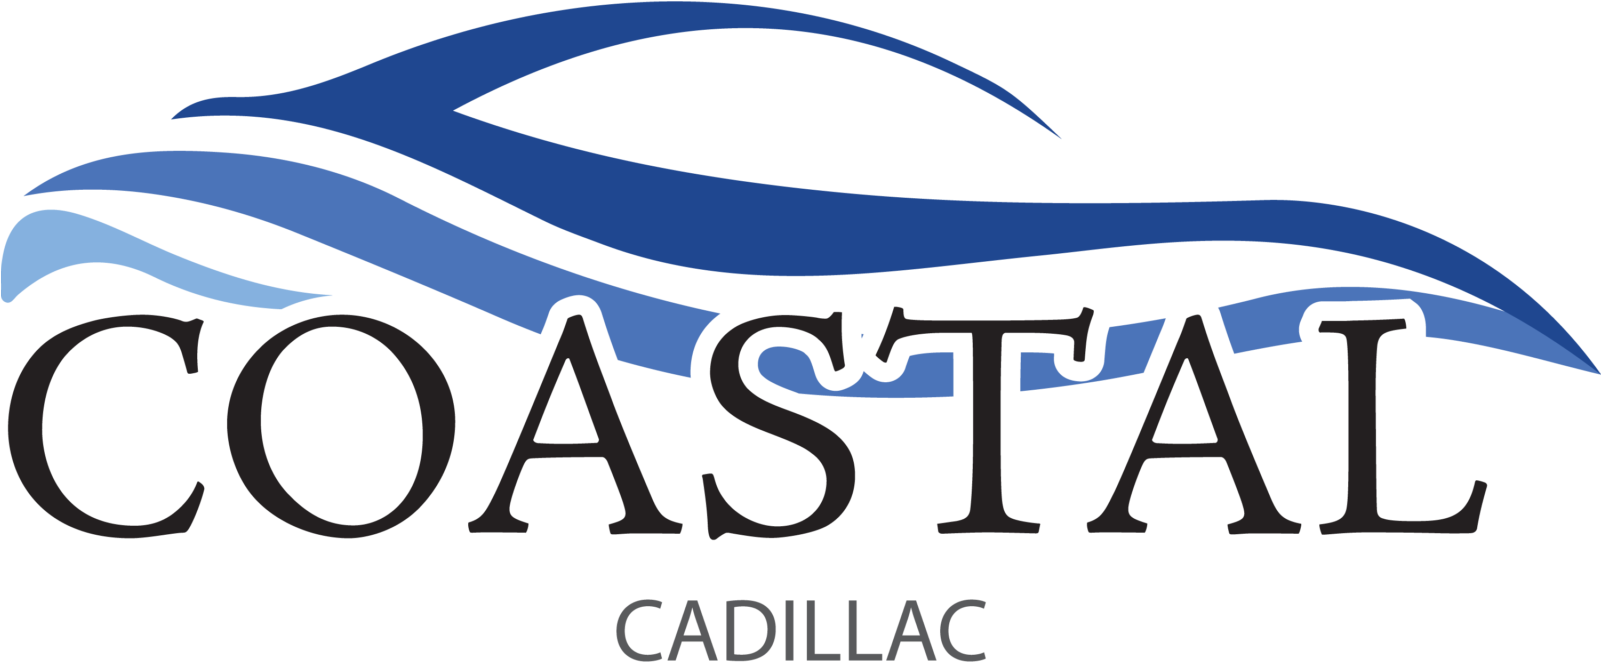 Coastal Chevrolet-cadillac - Edassist Logo (1600x682)